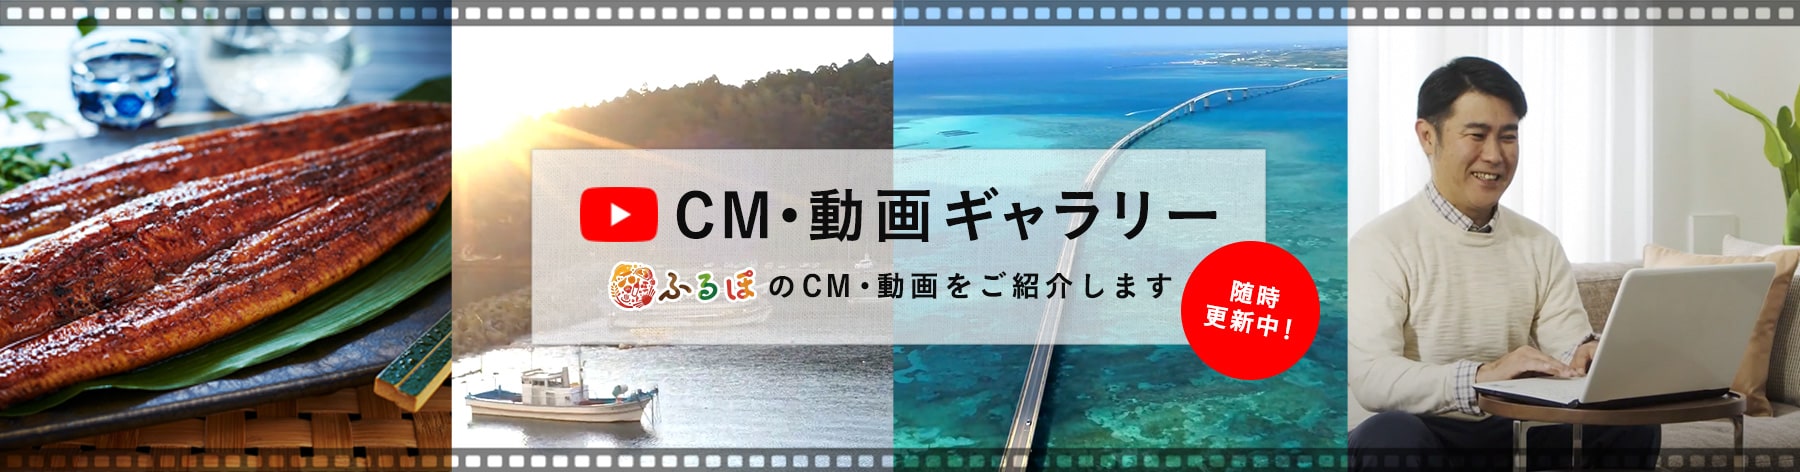 CM・動画ギャラリー「ふるぽ」のCM・動画をご紹介します